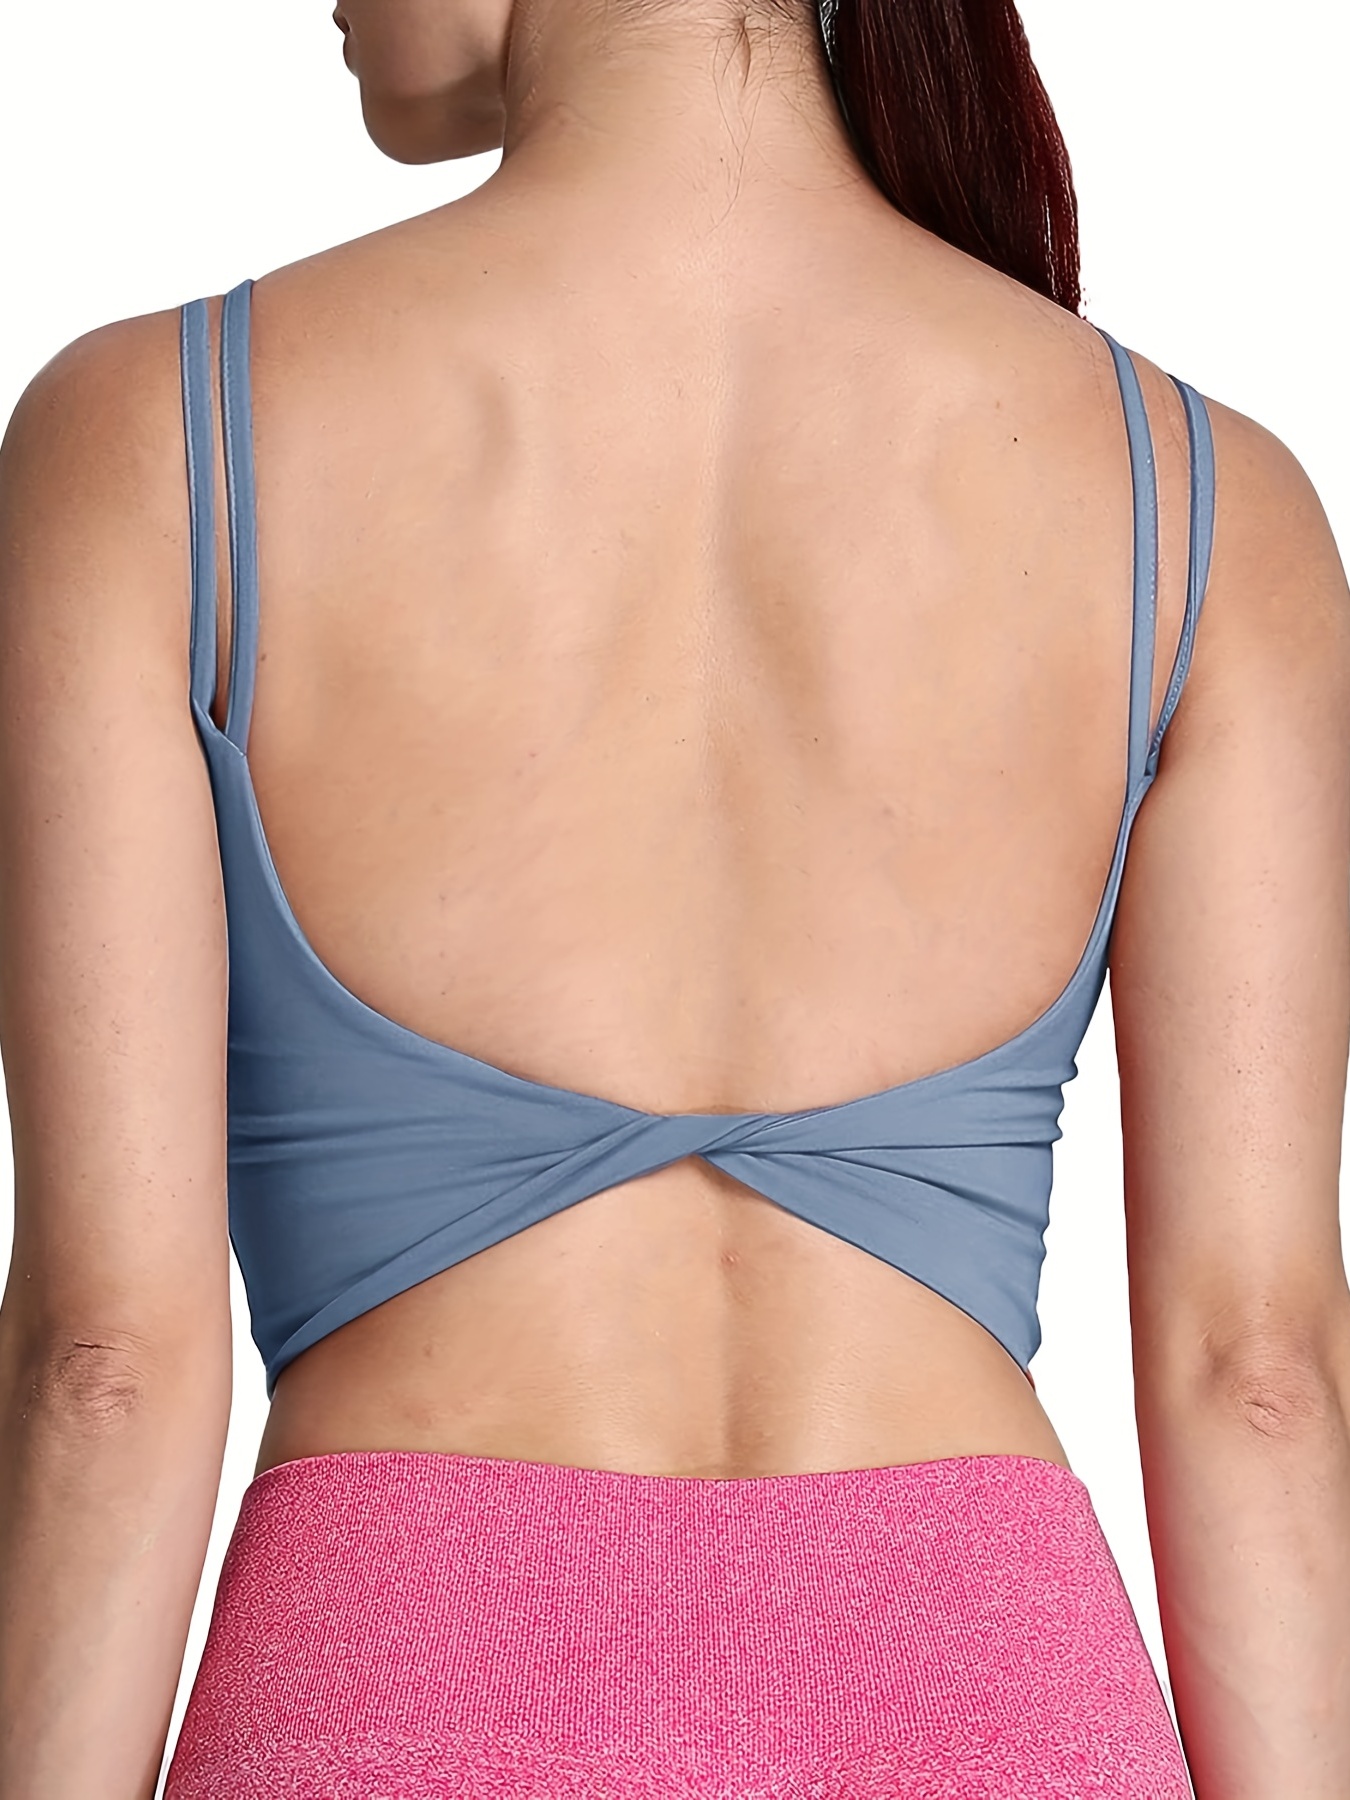 Women's Tank Top Underwear Beauty Back Yoga Bra Sports Bra Strappy Gym  Cross